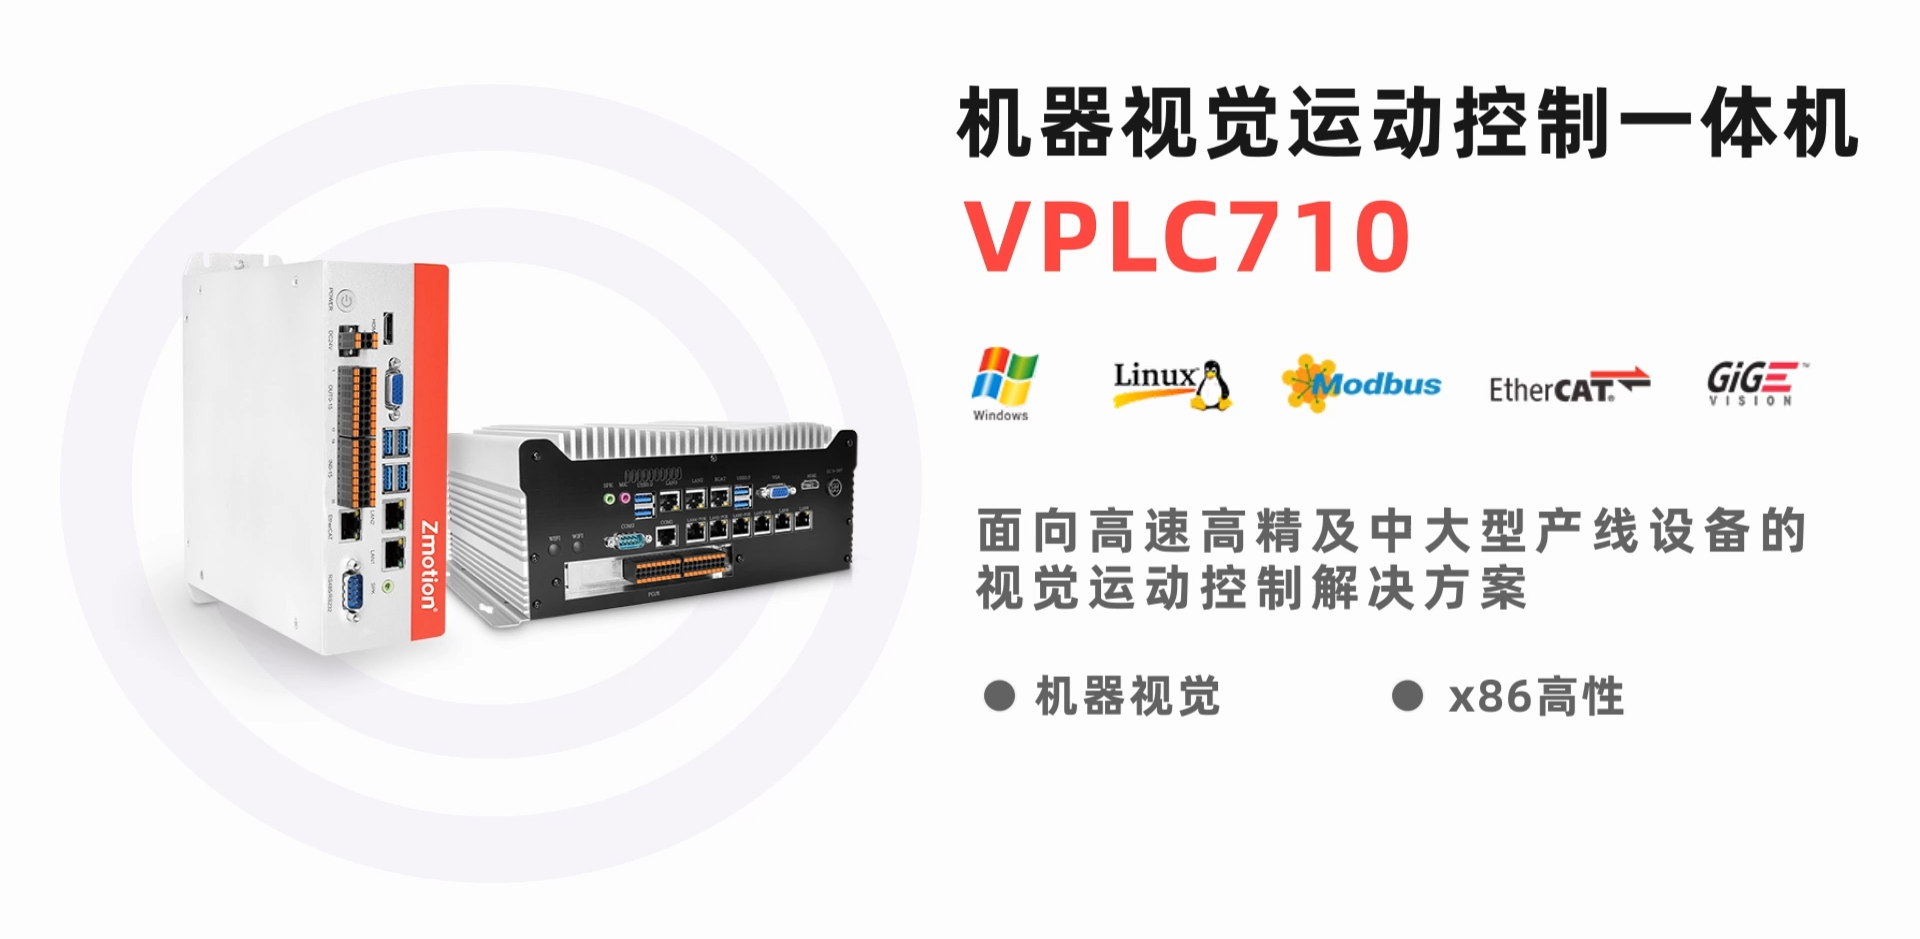 x86機器視覺運動控制一體機VPLC710